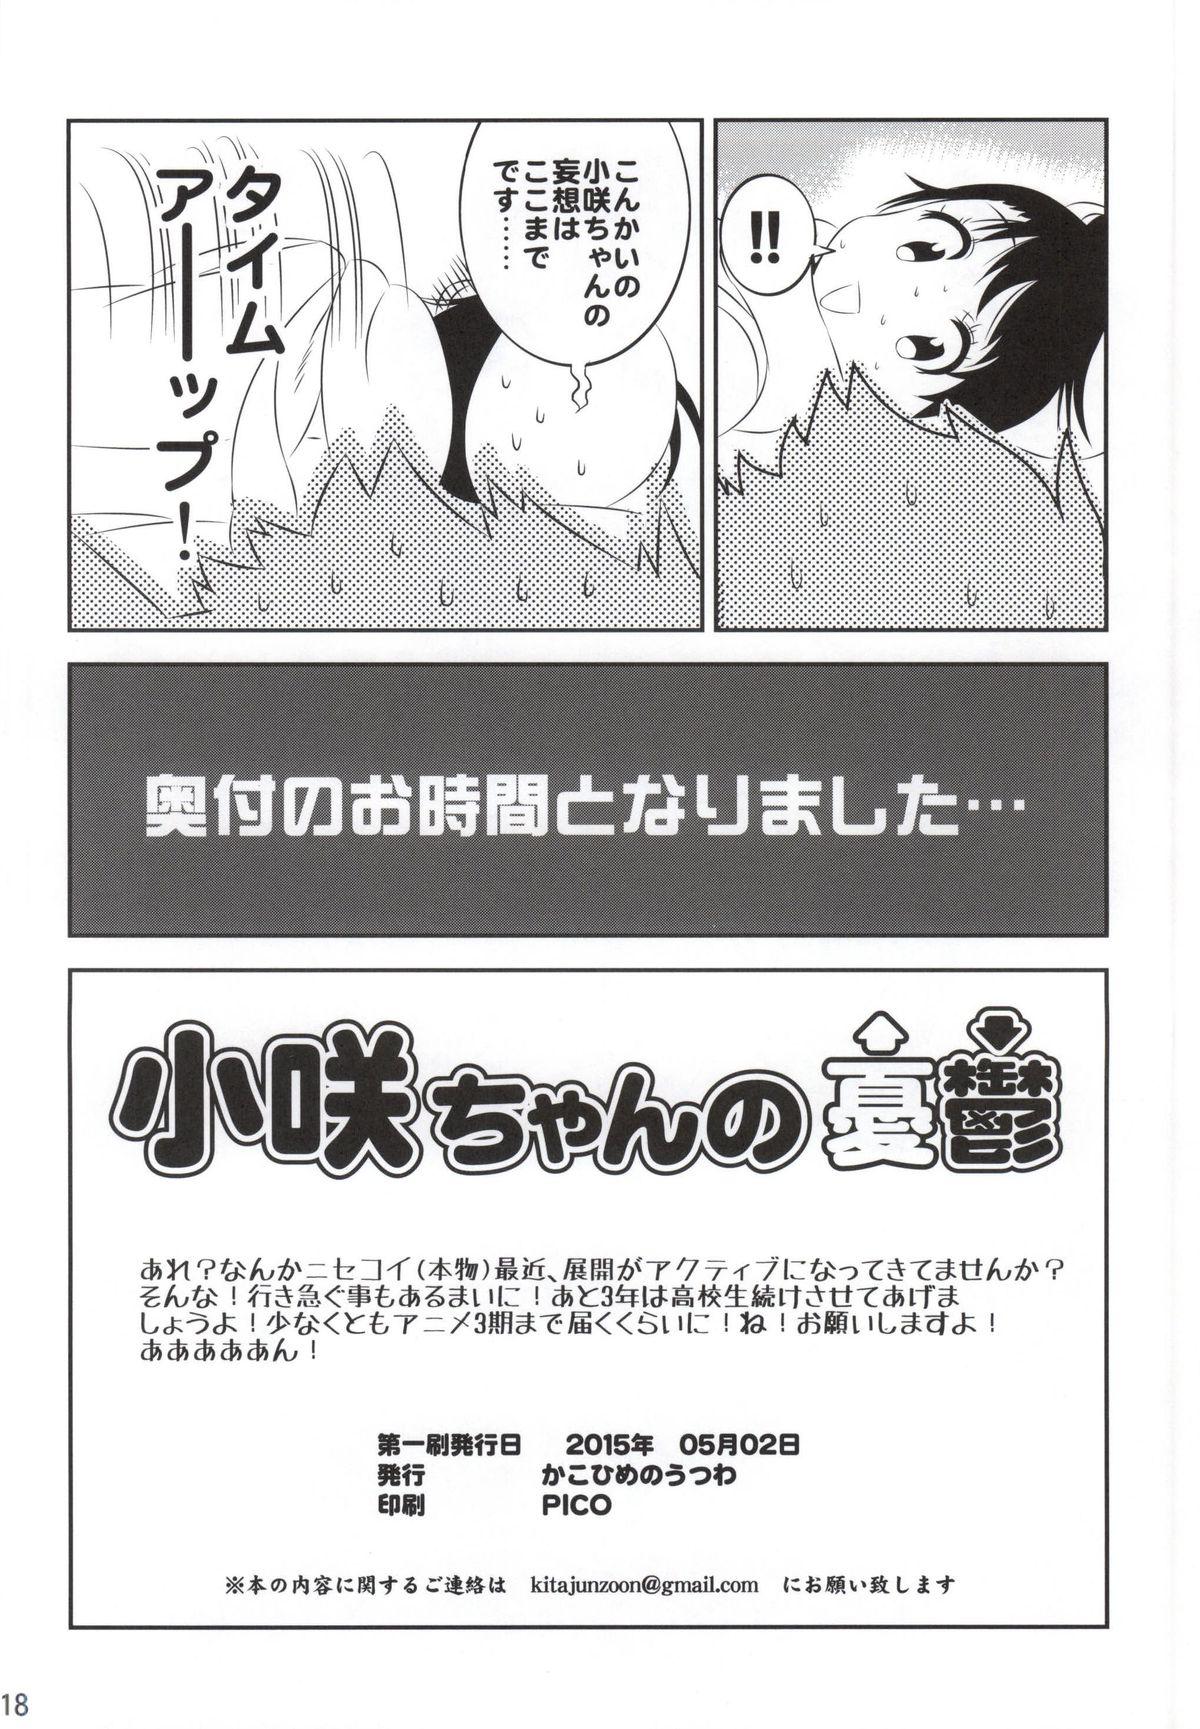 Butt Sex Kosaki-chan no Yuuutsu 4 - Nisekoi Thylinh - Page 17